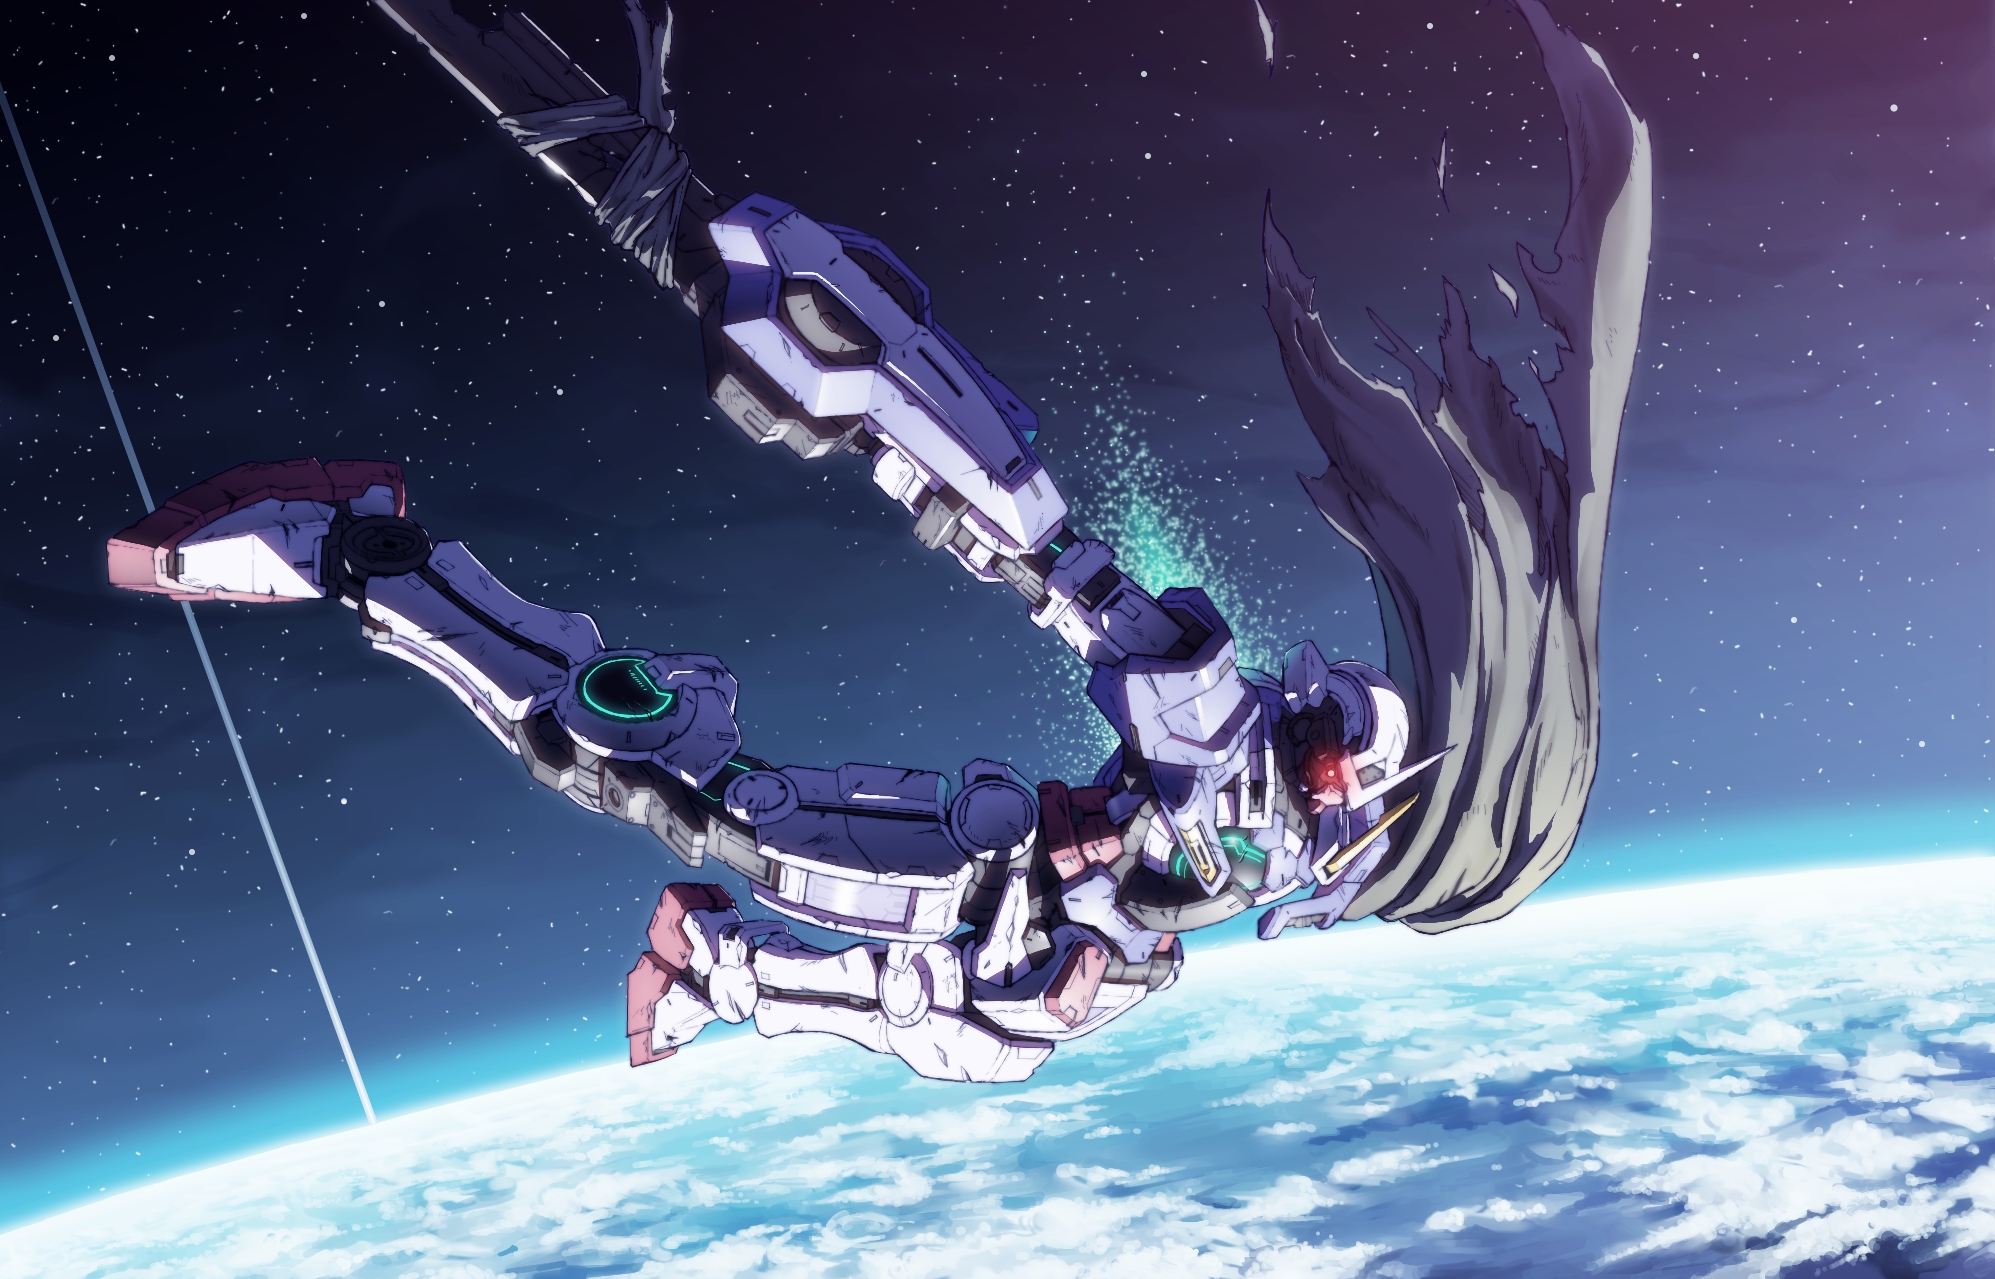 Daizo Earth Exia Mobile Suit Gundam